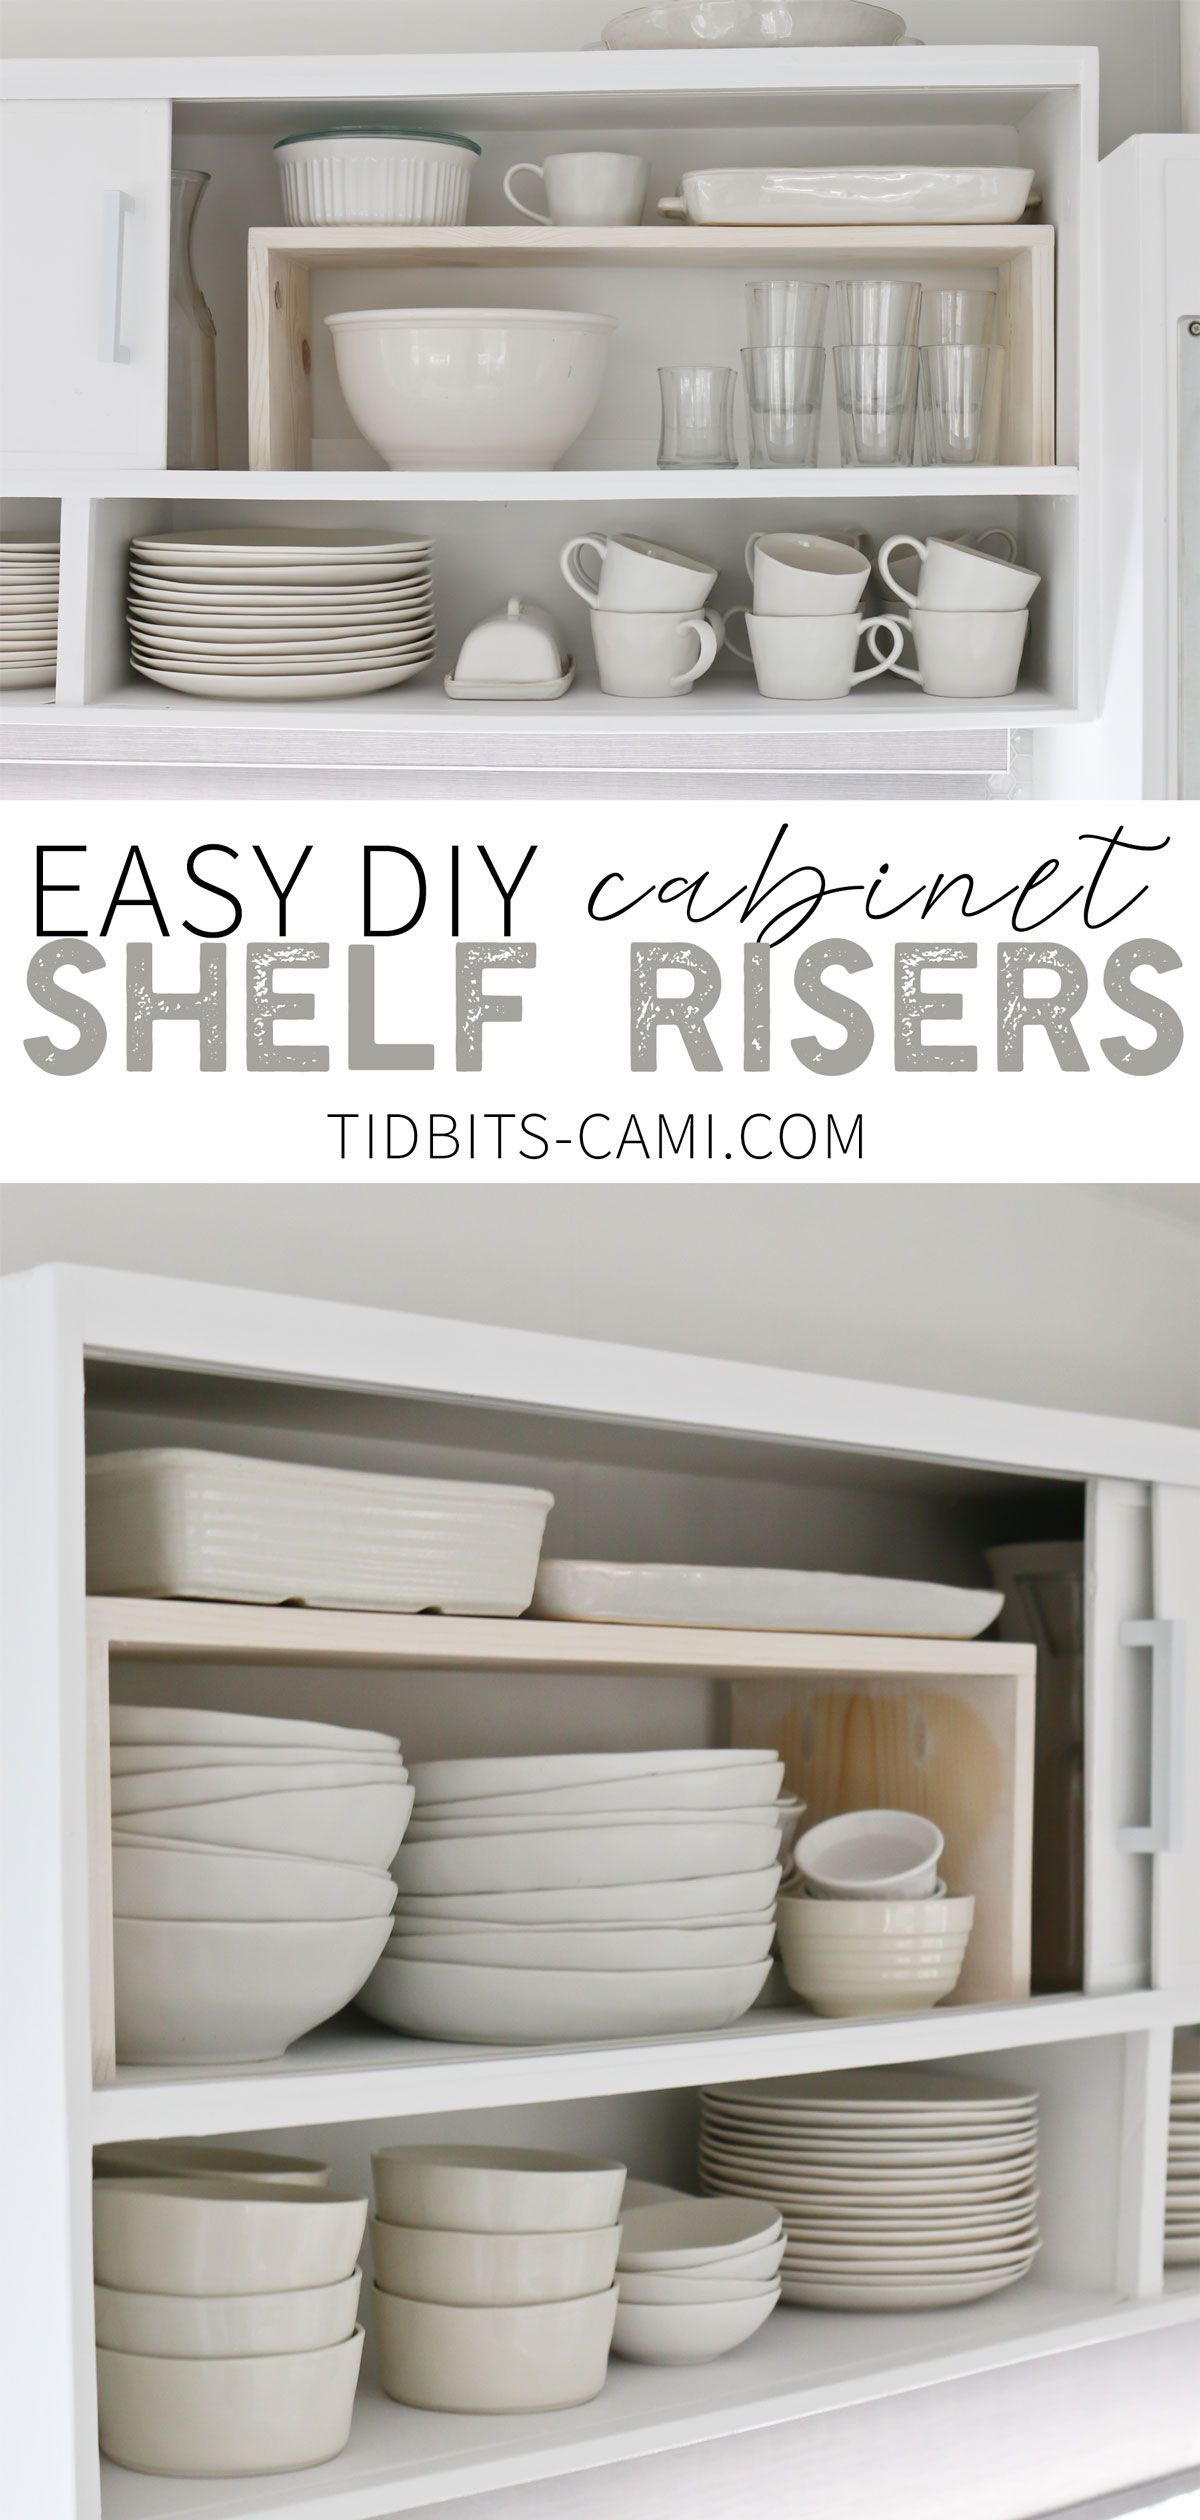 Easy DIY Cabinet Shelf Risers - Tidbits - Easy DIY Cabinet Shelf Risers - Tidbits -   15 diy Organization shelf ideas